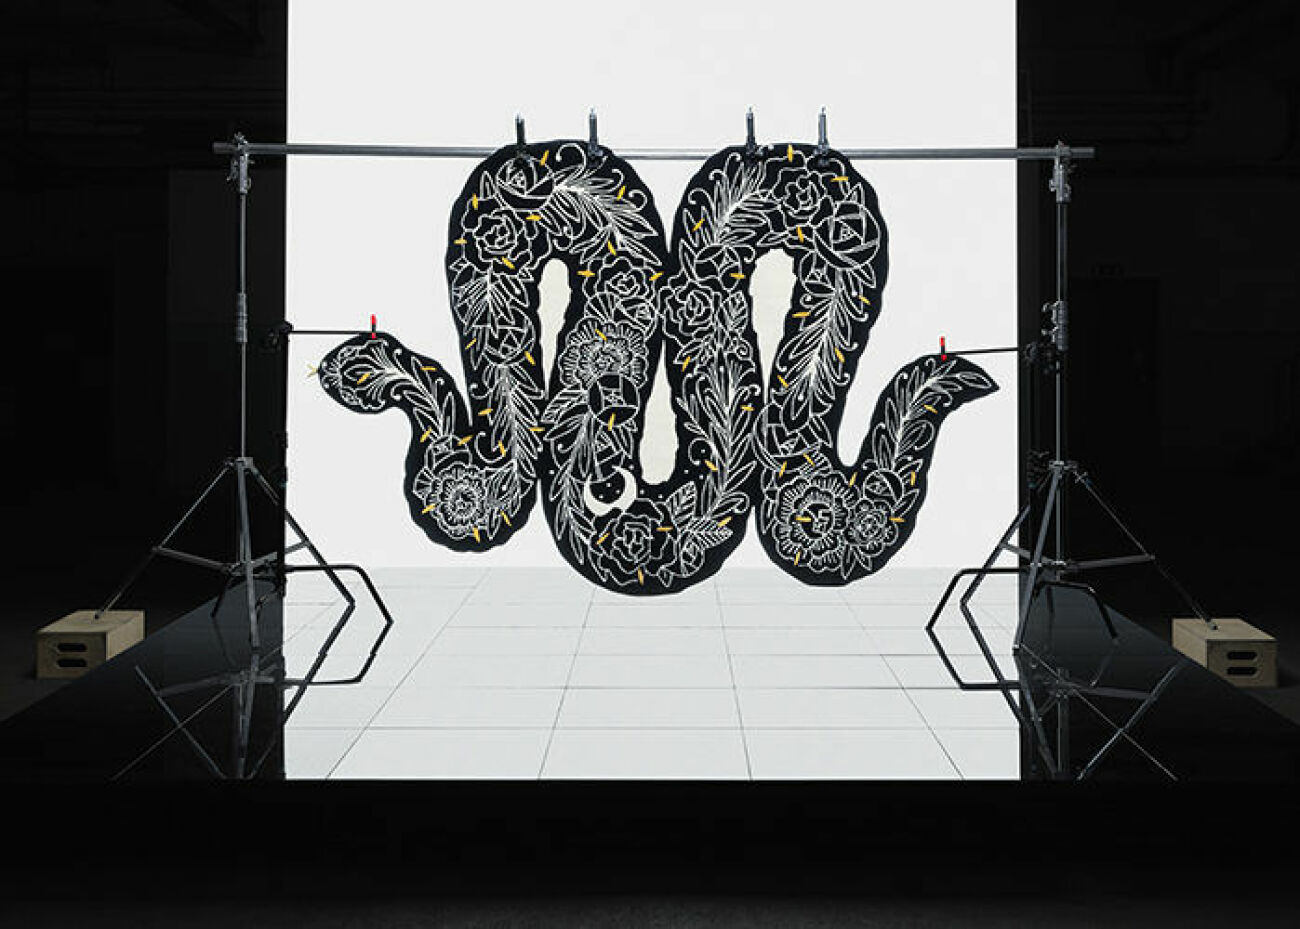 Ikea Art Collection – matta i form av orm